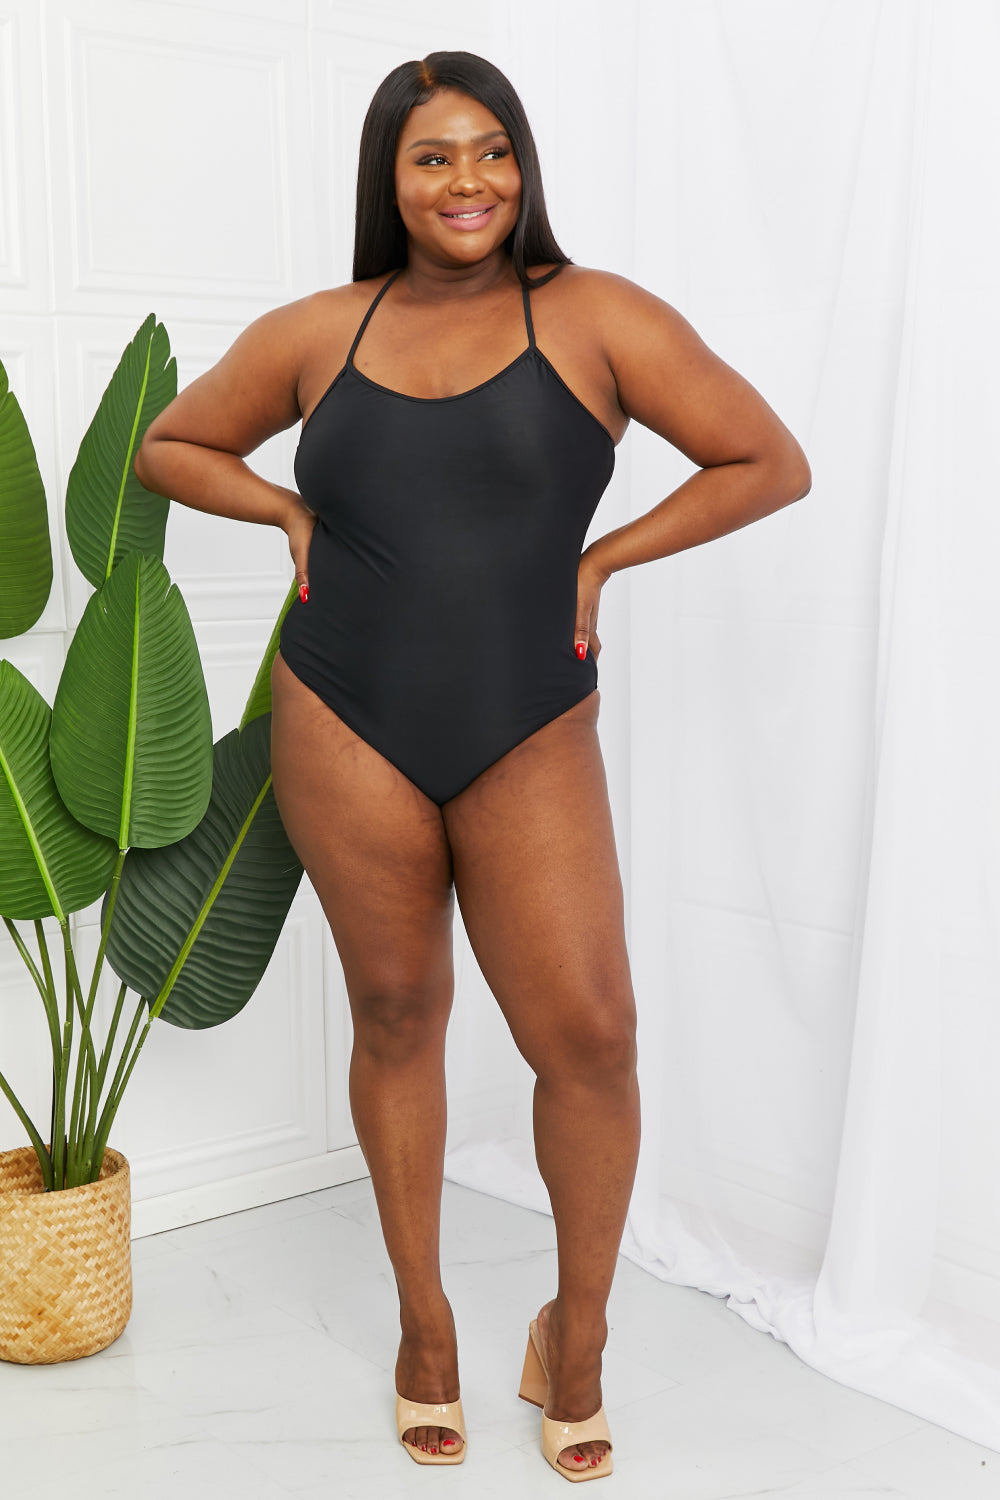 Stylish black Marina West swimsuit